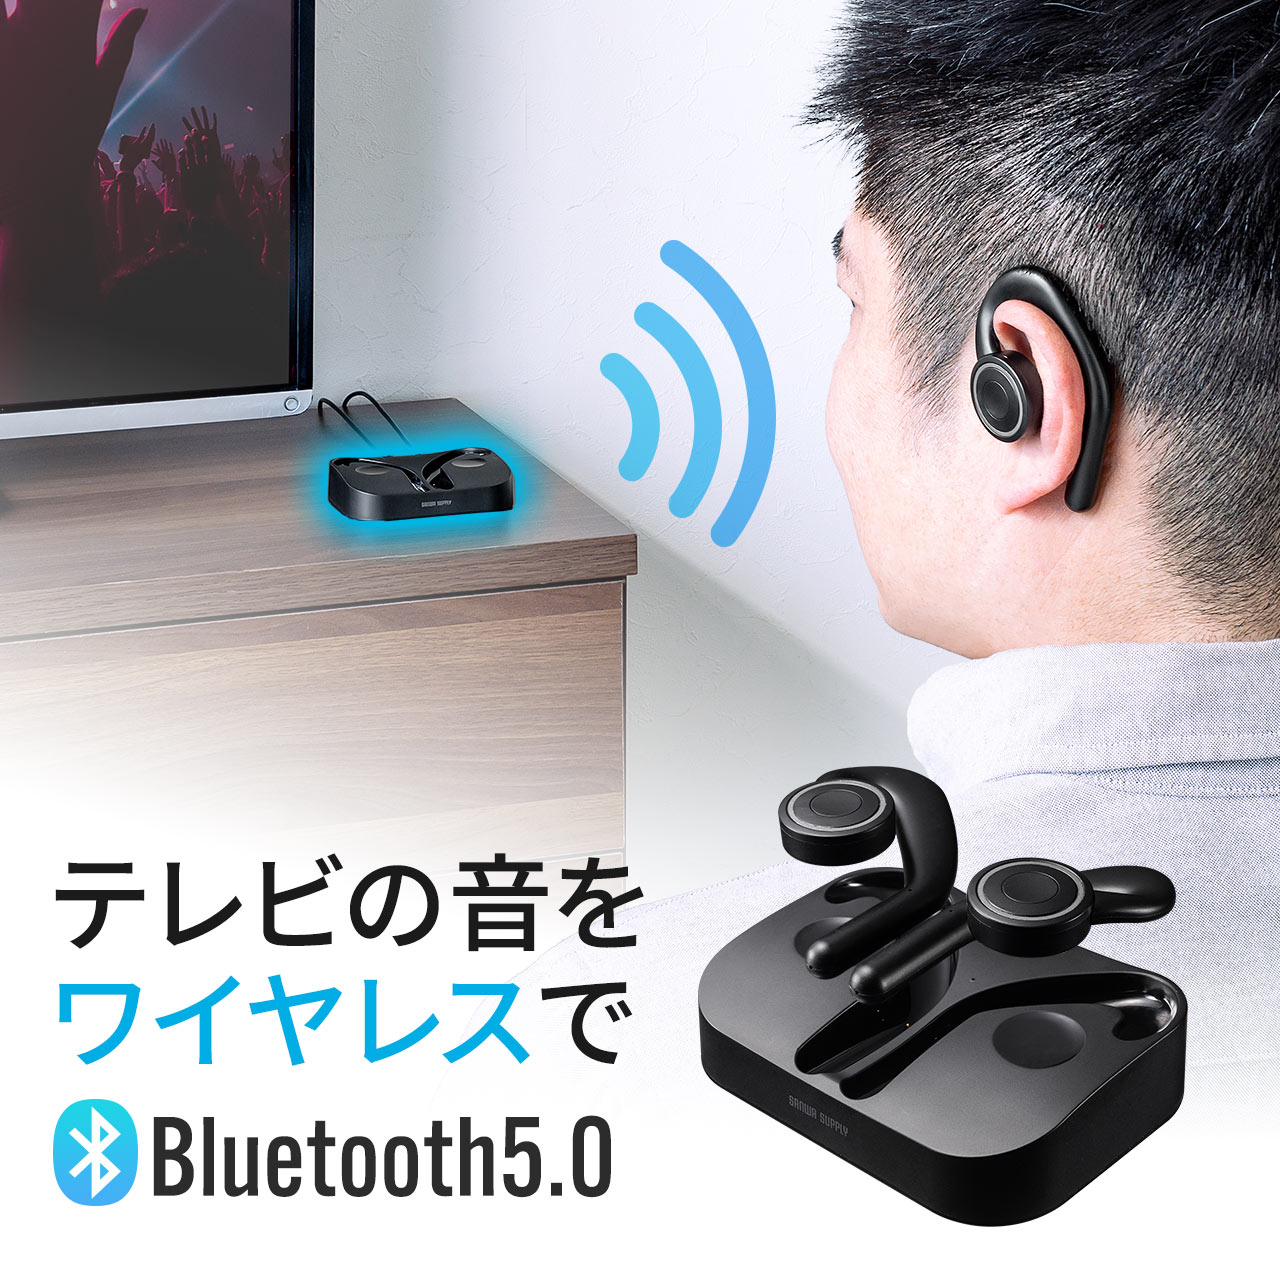 テレビ イヤホン Bluetooth ワイヤレス ヘッドホン